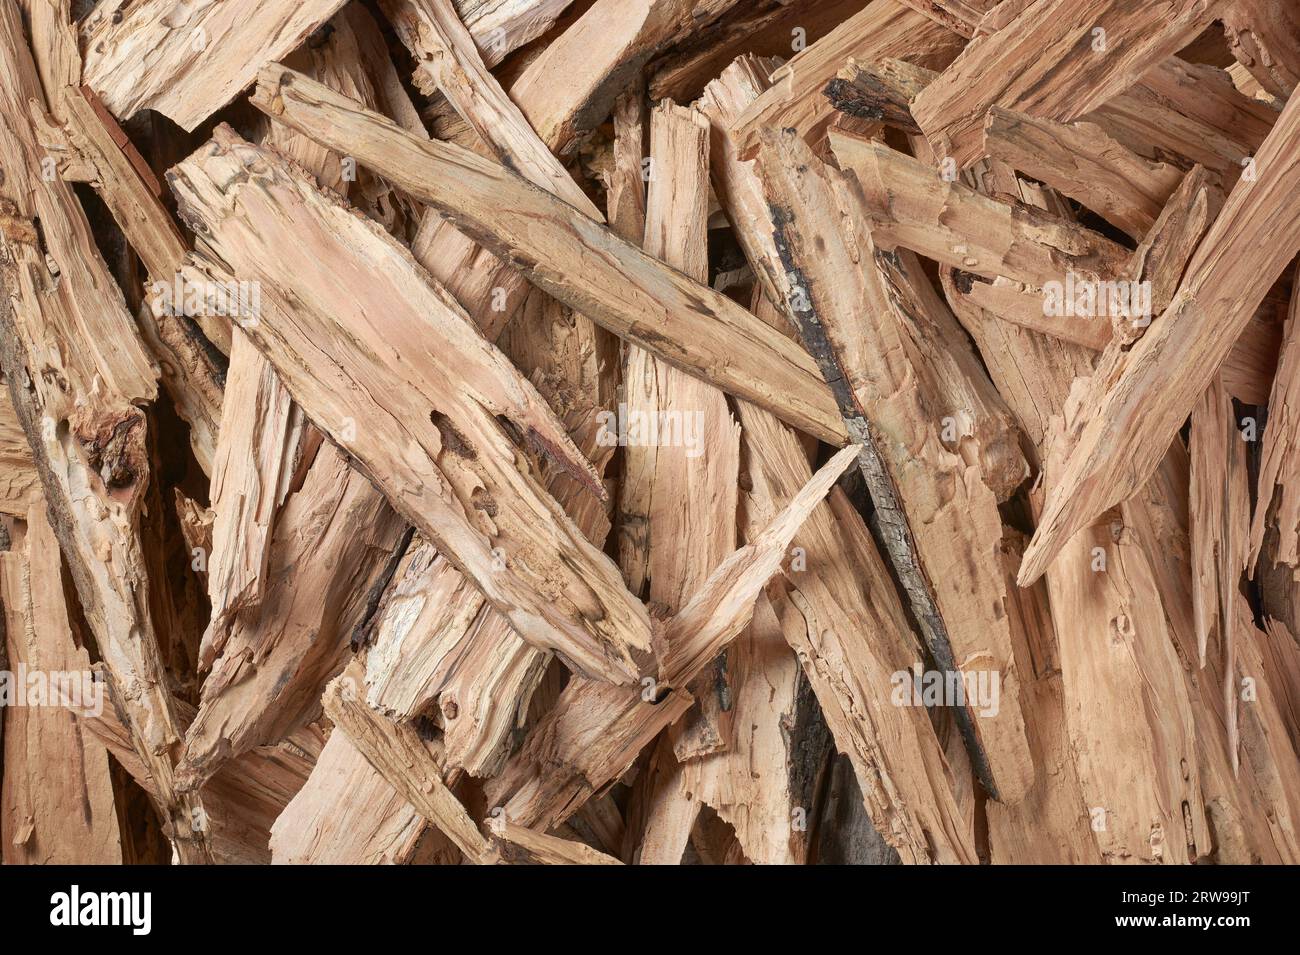 vista dall'alto dei pezzi di legna da ardere tagliati, legno duro stagionato preparato per l'uso come combustibile in caminetti, stufe a legna o pozzi antincendio all'aperto, fonte comune Foto Stock